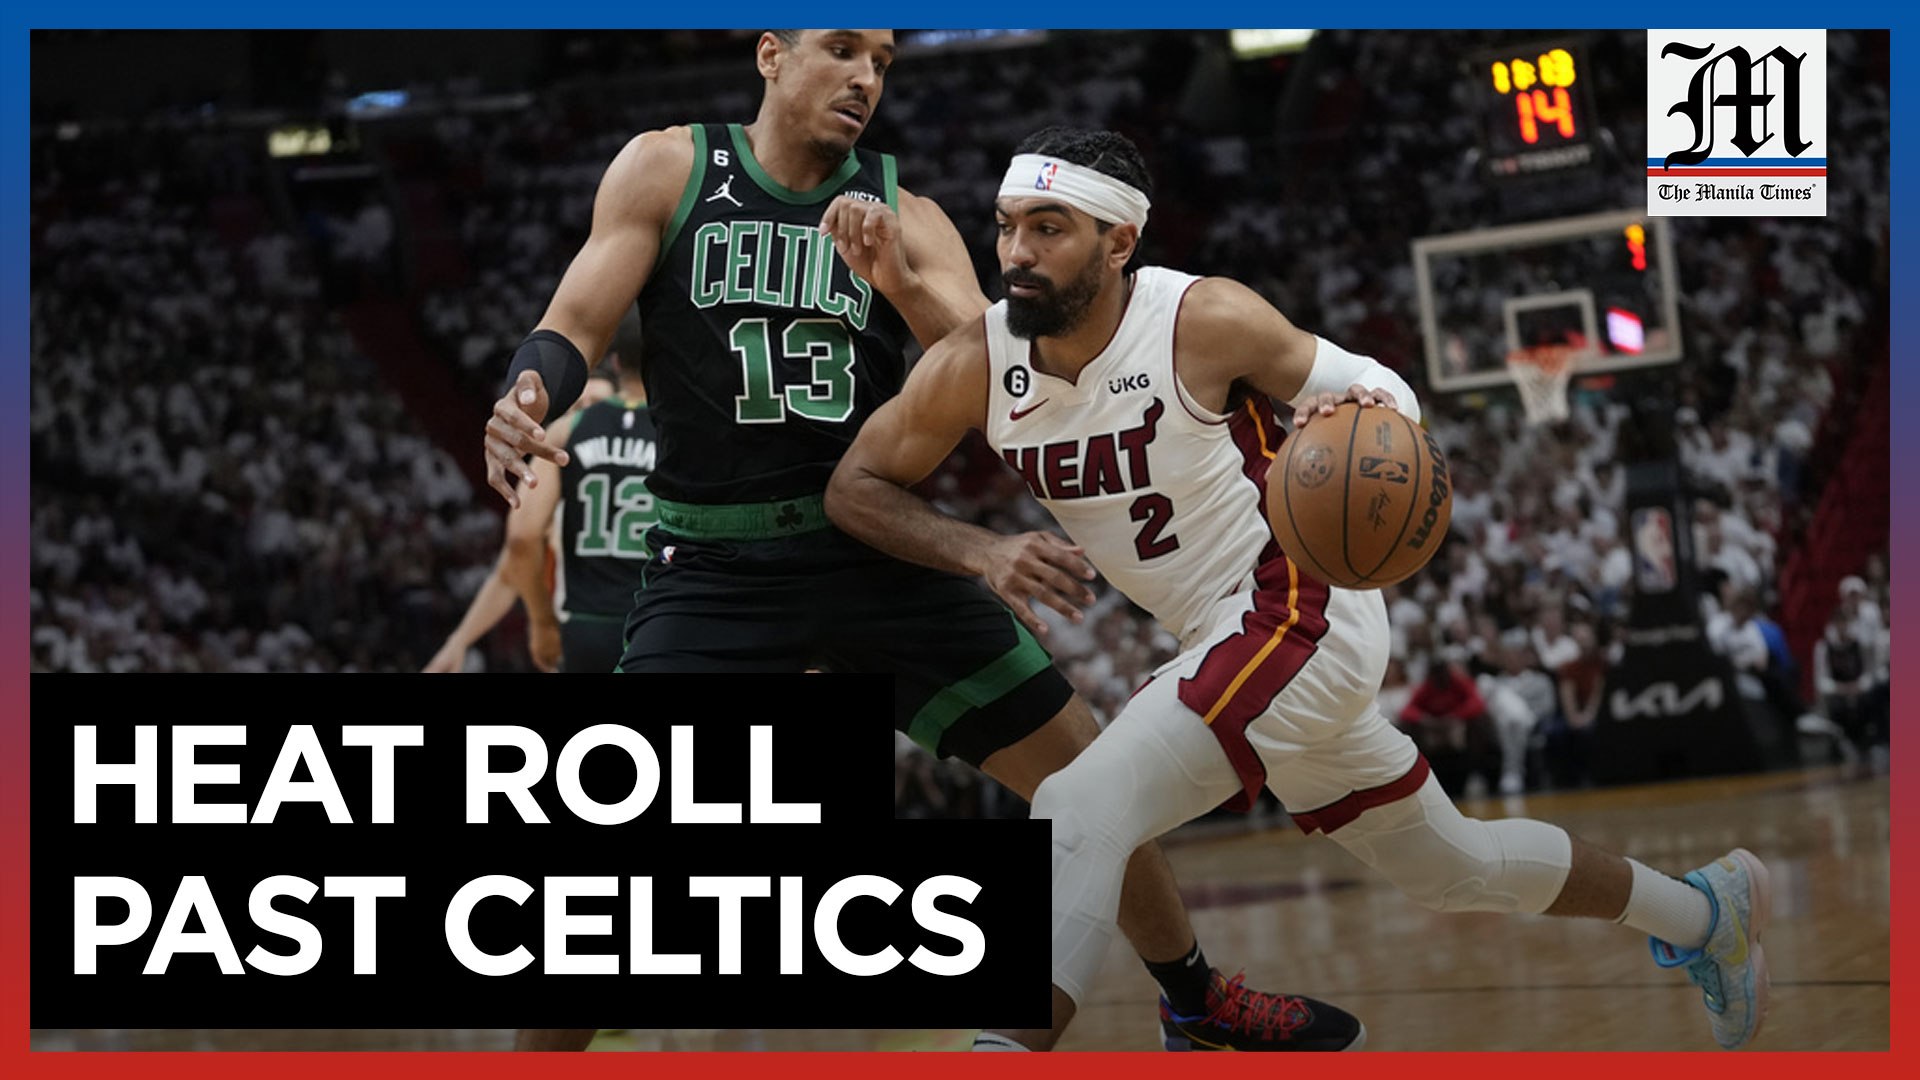 Heat Roll Past Celtics 128-102, Take 3-0 Lead in Eastern